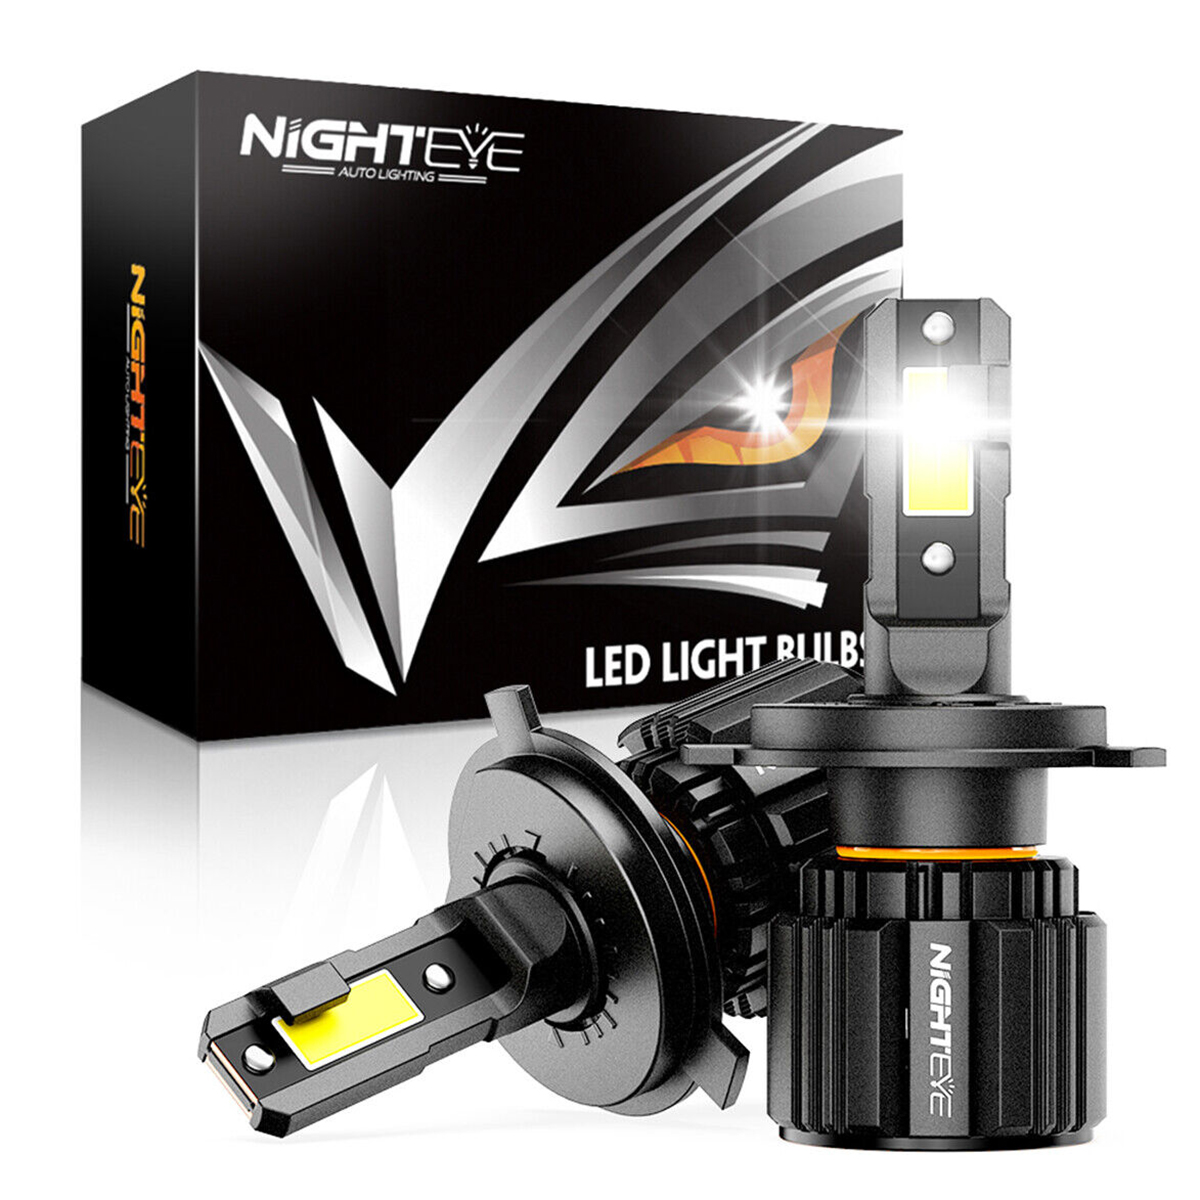 LED-Suchscheinwerfer Night Eye